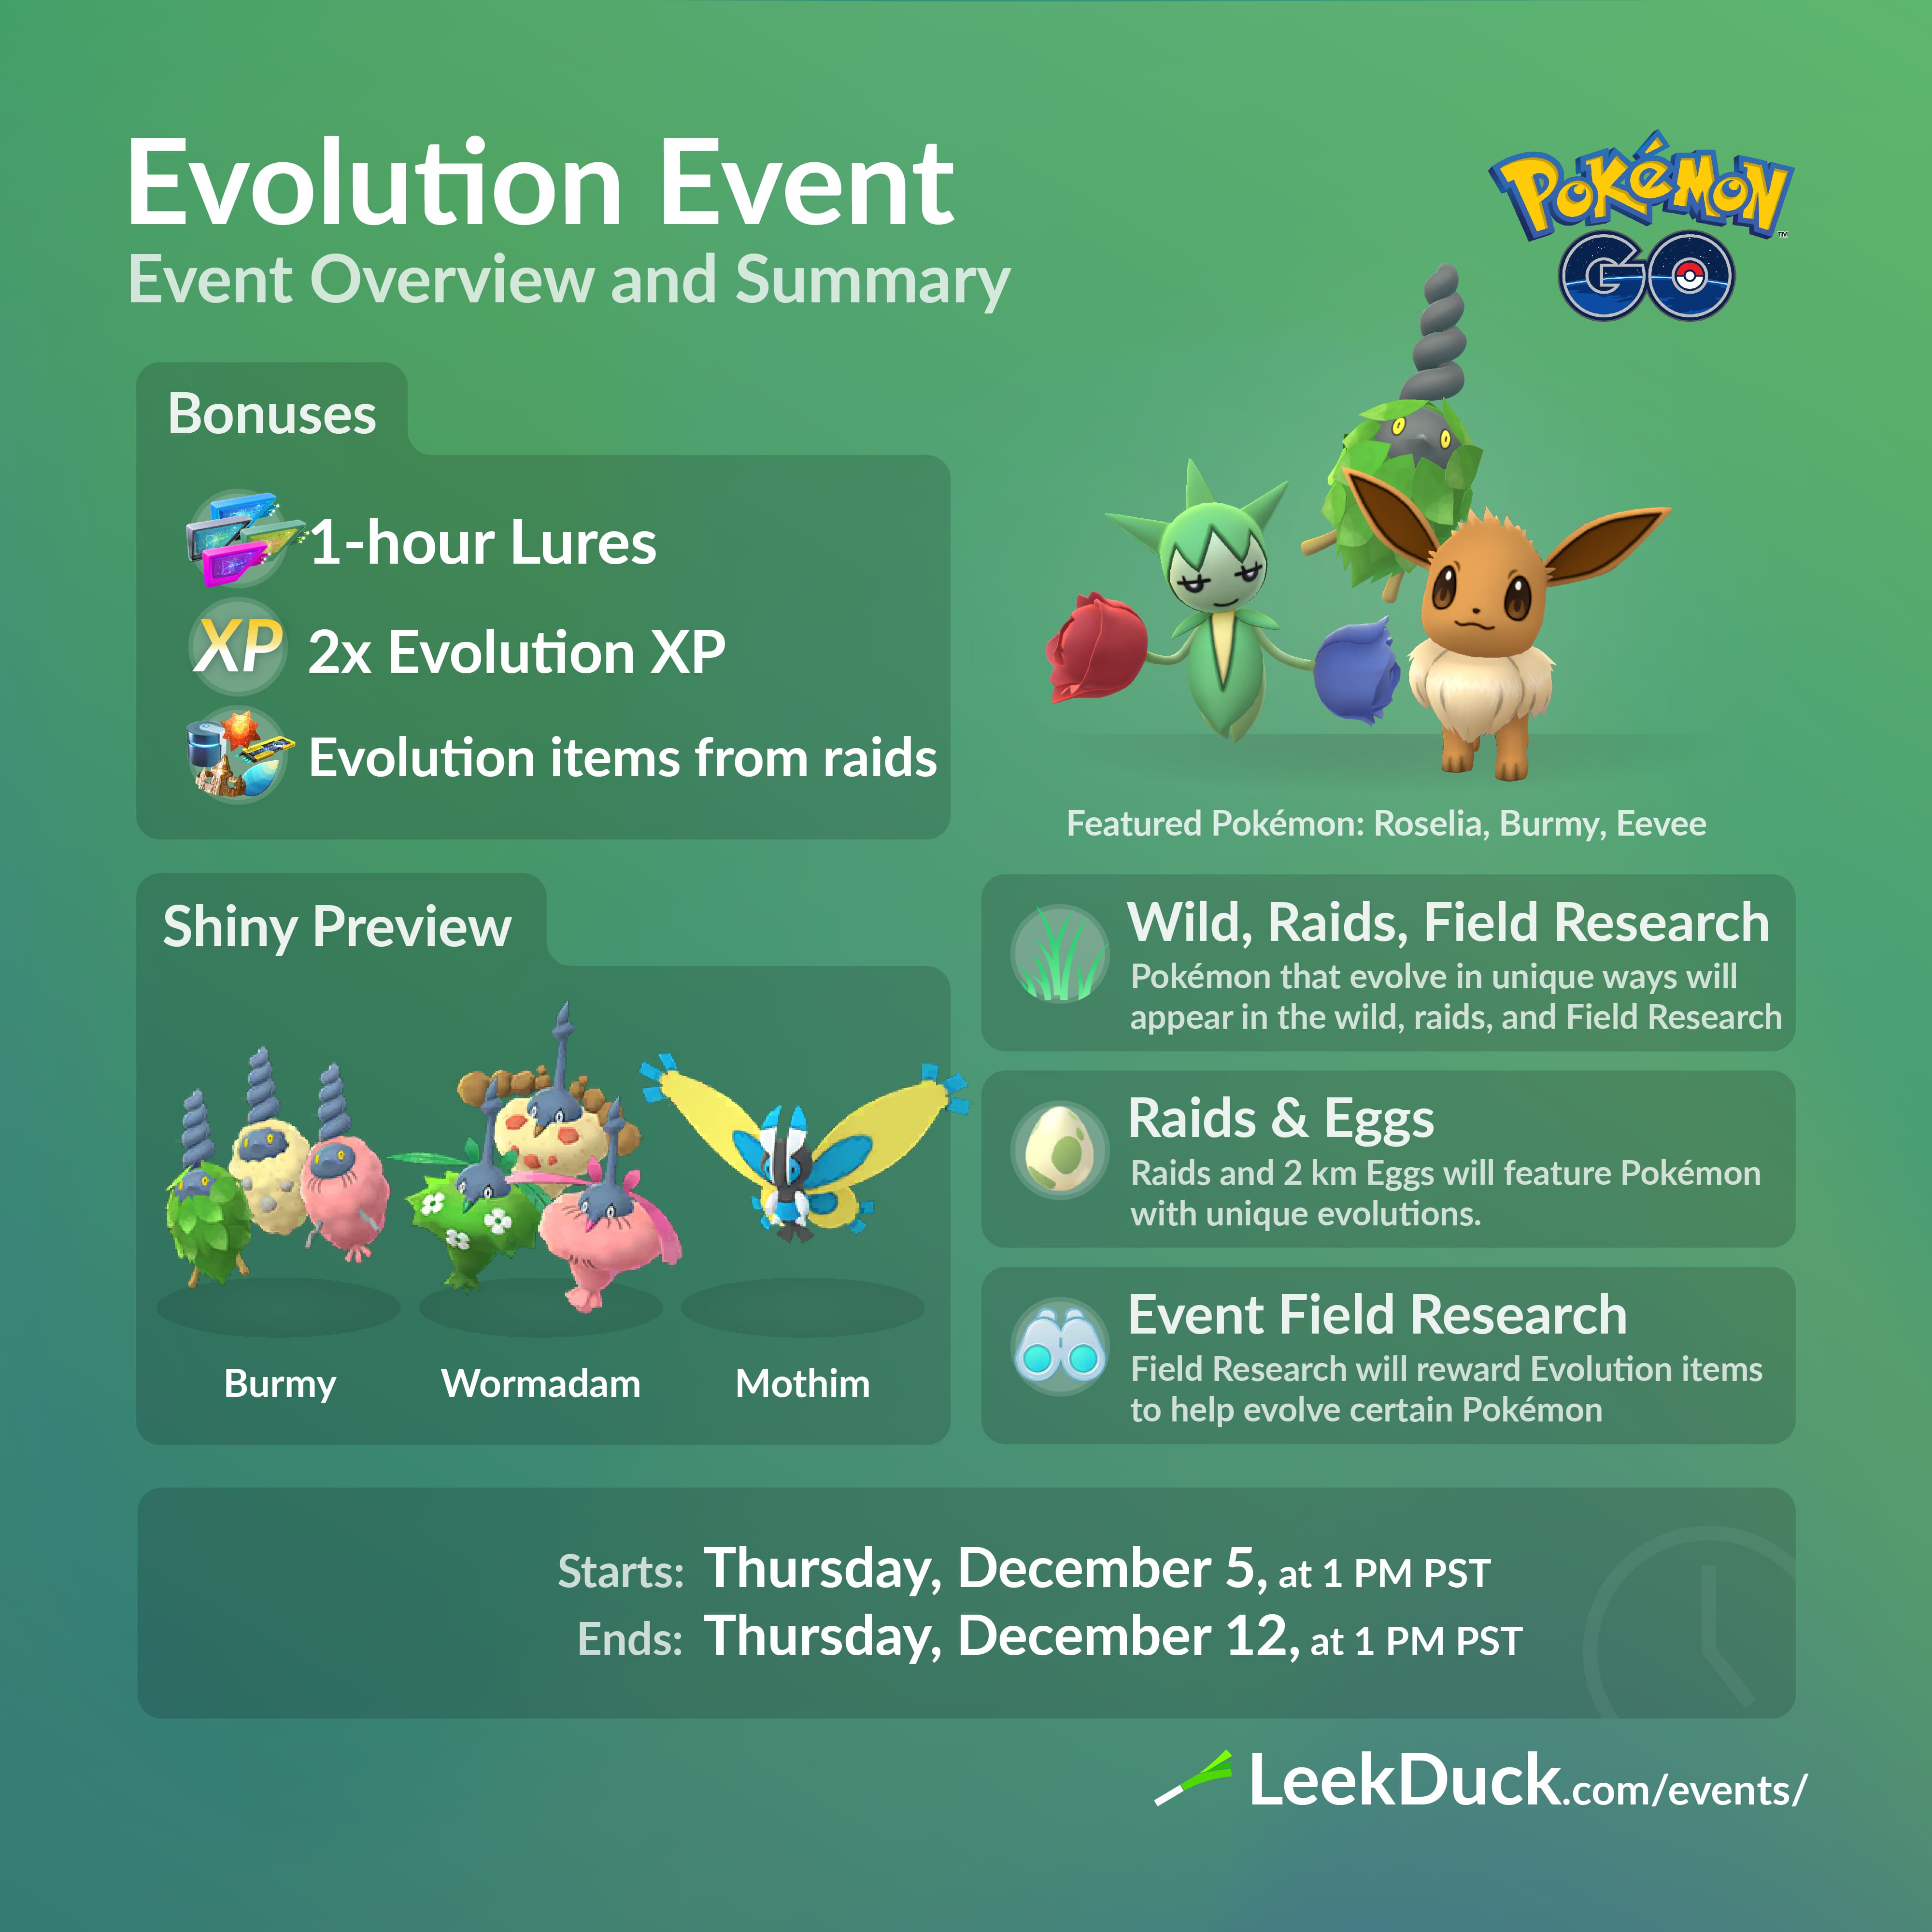 Pokémon Go adds new evolution mechanic for leek-wielding Sirfetch